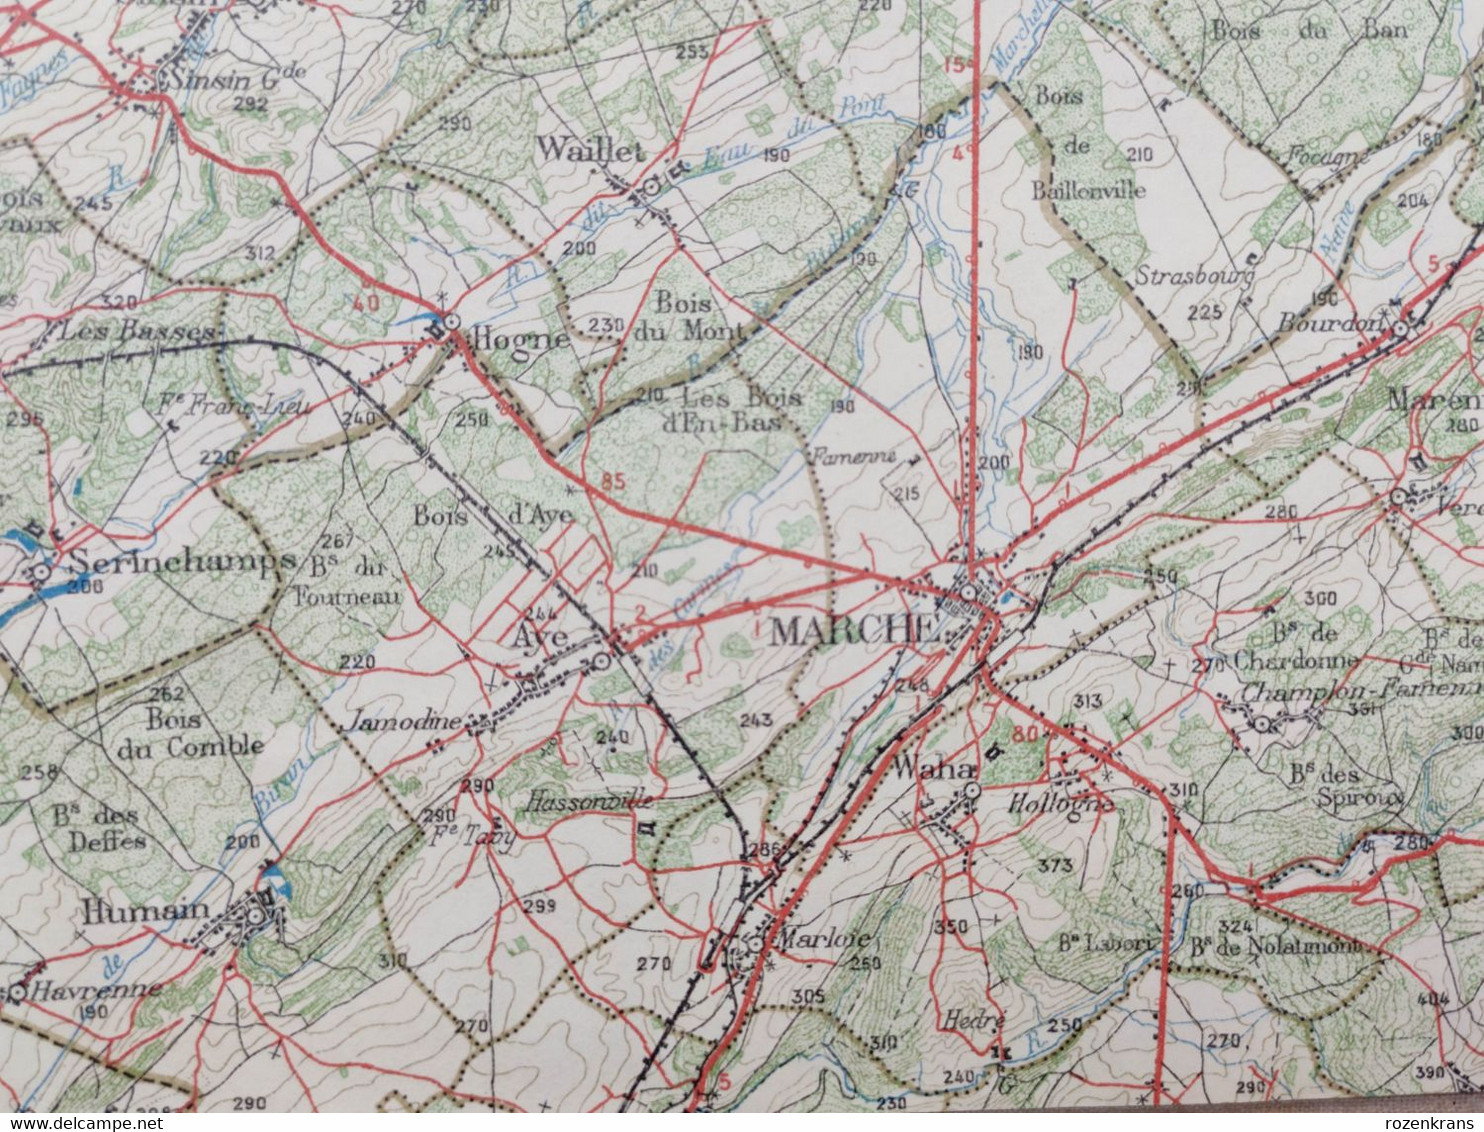 Carte topographique toilée militaire STAFKAART 1907 Dinant Hastiere Givet St Hubert Ciney Nassogne Han s Lesse Rochefort